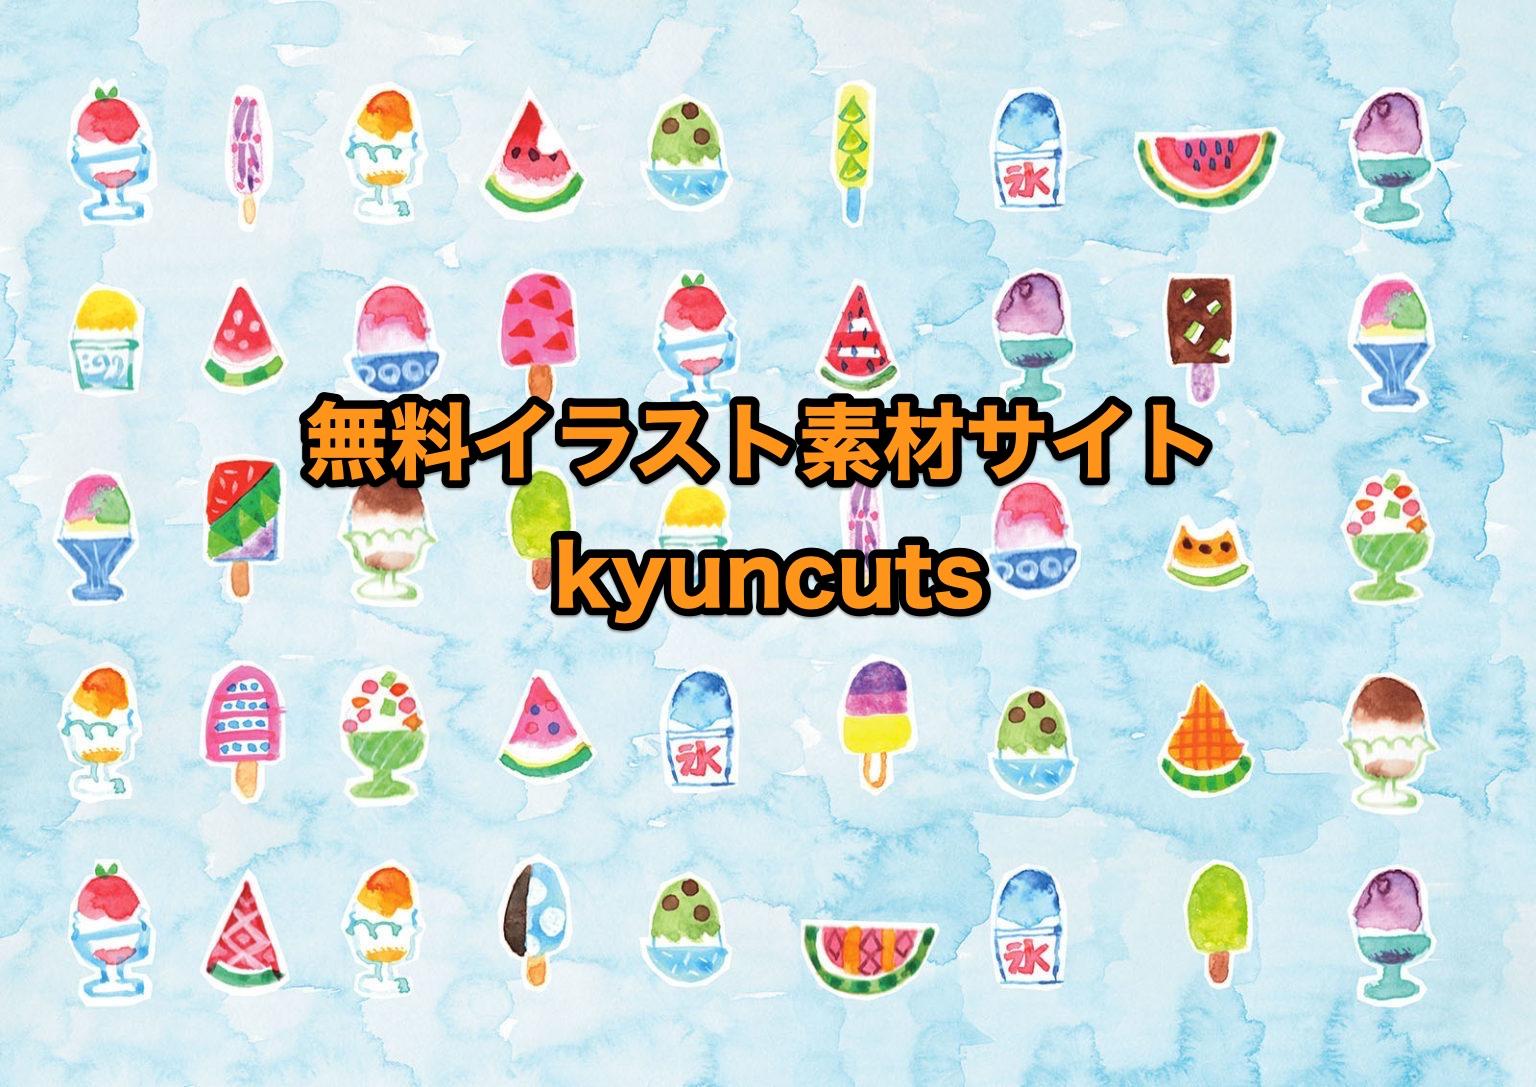 無料イラスト素材サイト「kyuncuts」